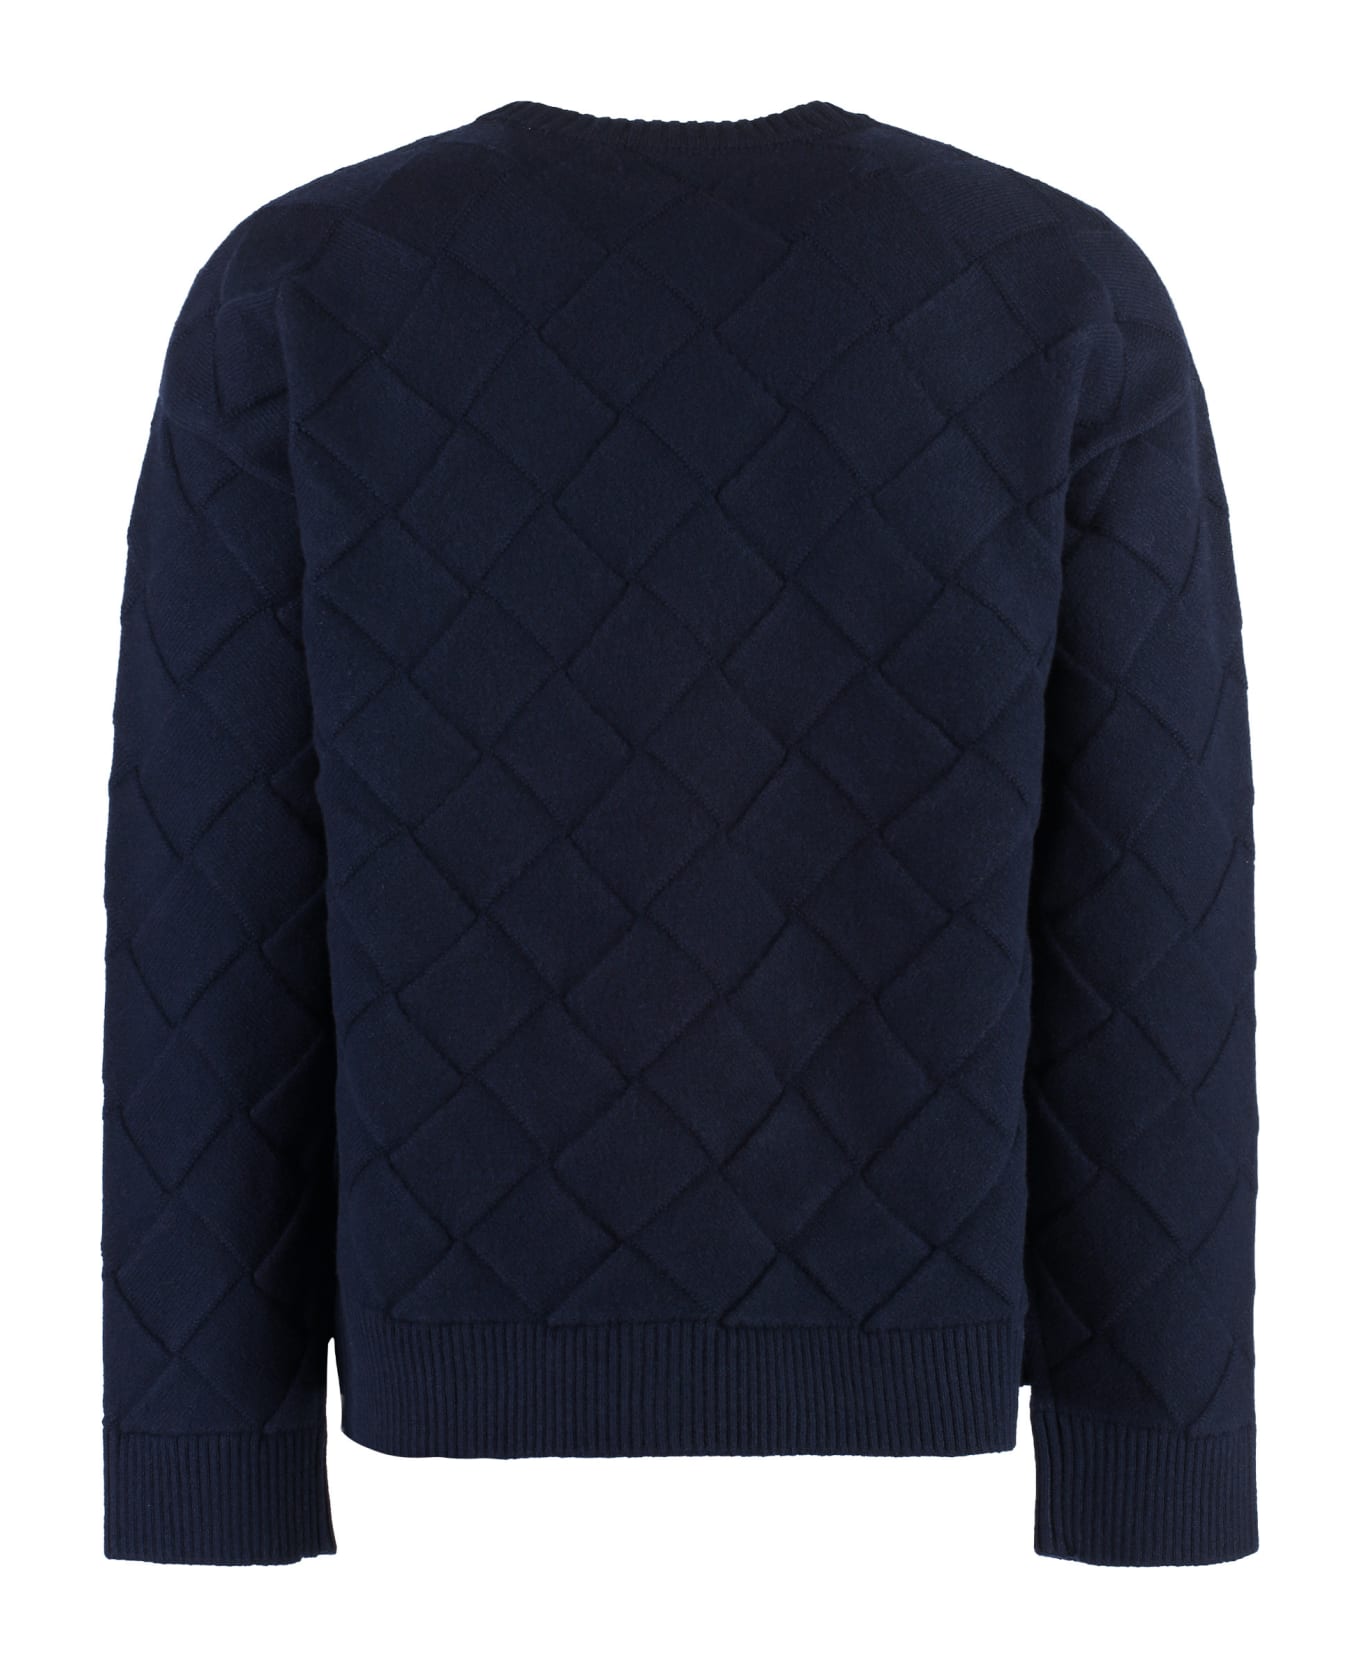 Bottega Veneta Crew-neck Wool Sweater - blue ニットウェア